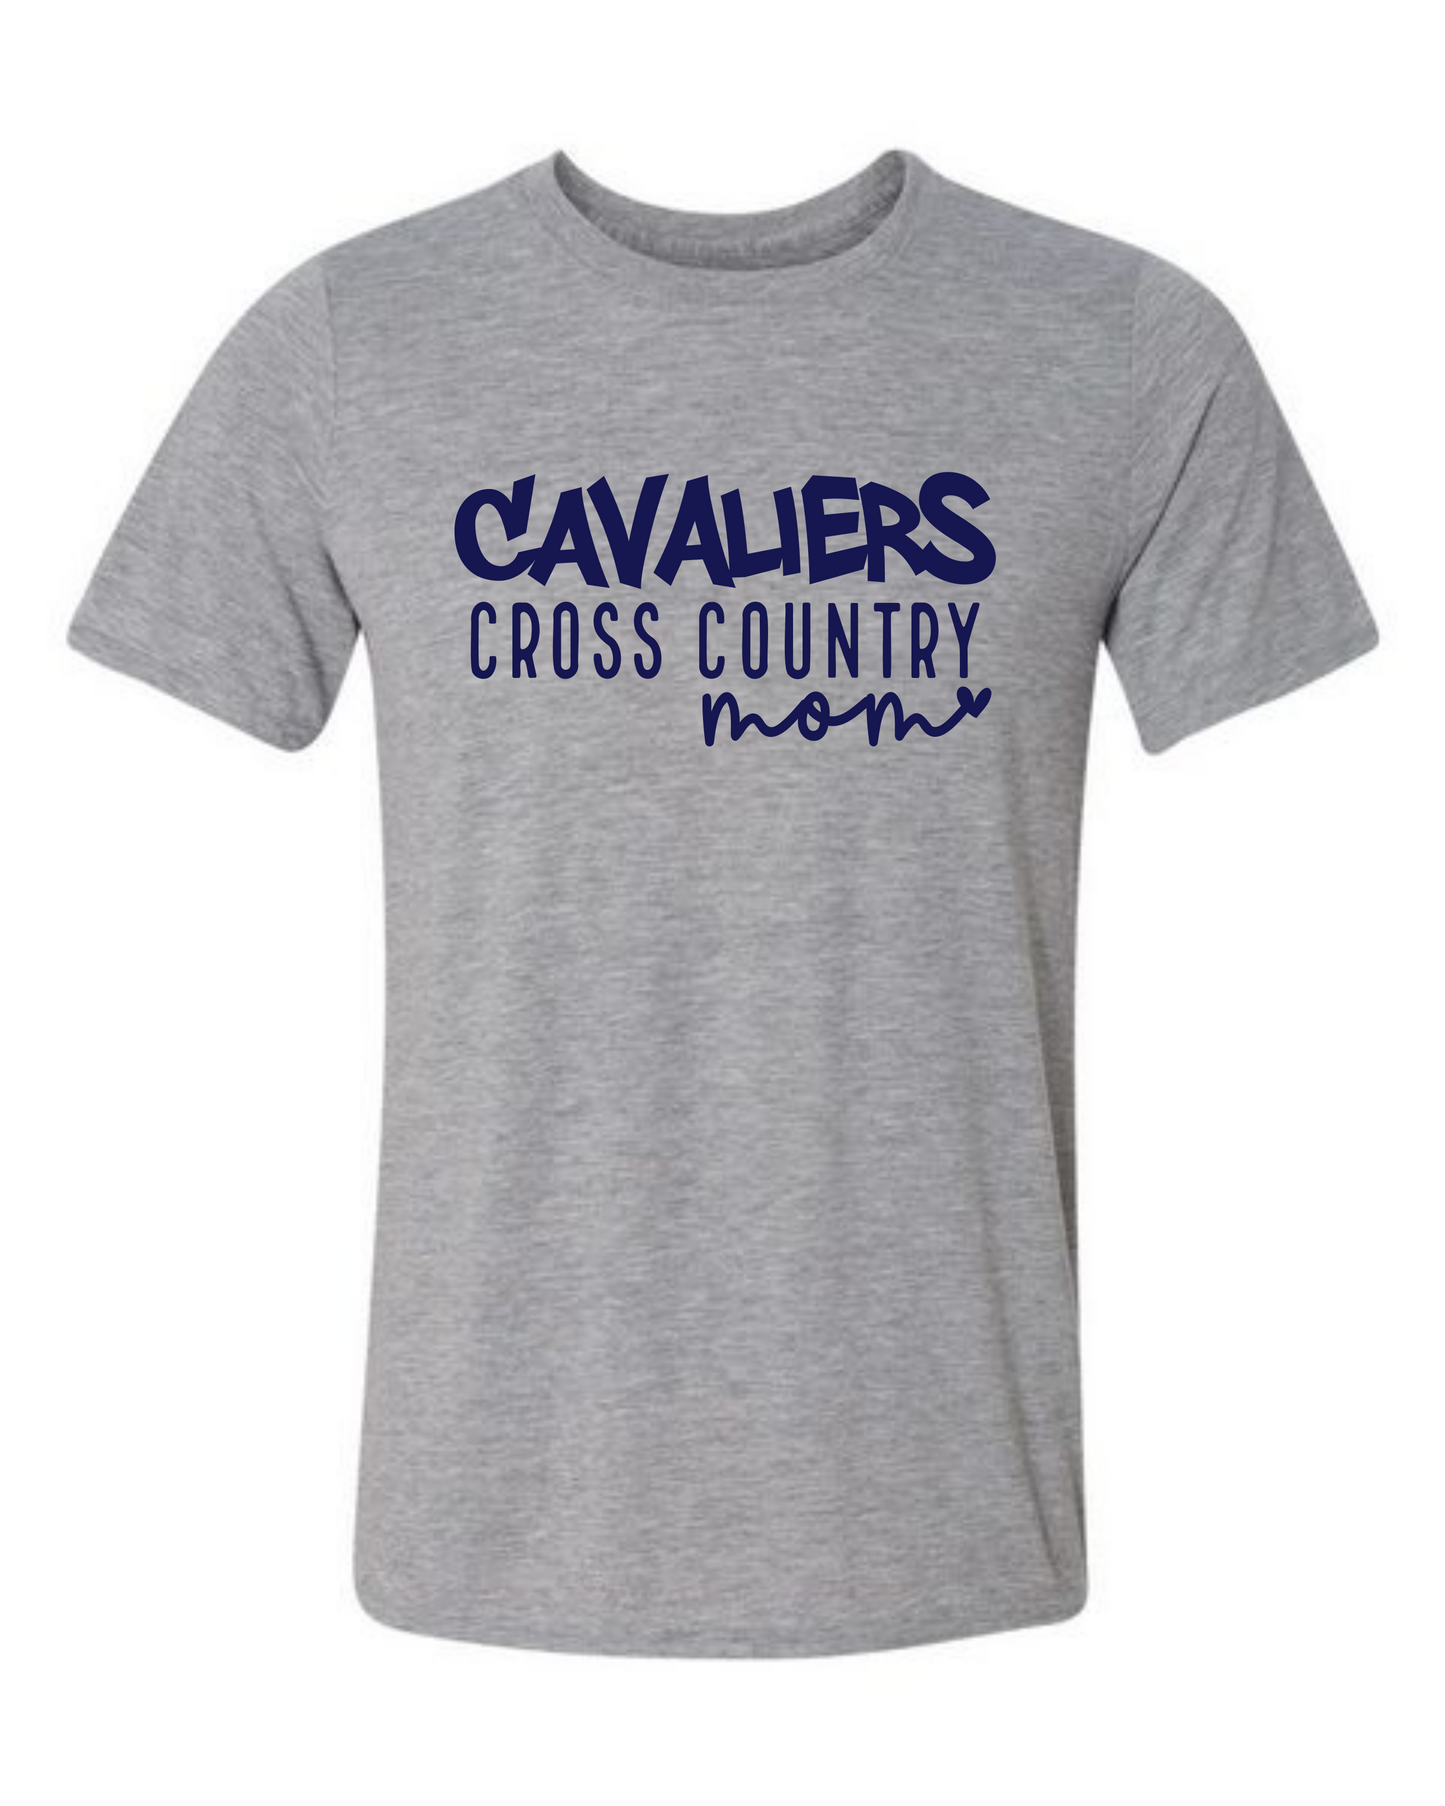 Cavaliers Cross Country Mom Tshirt